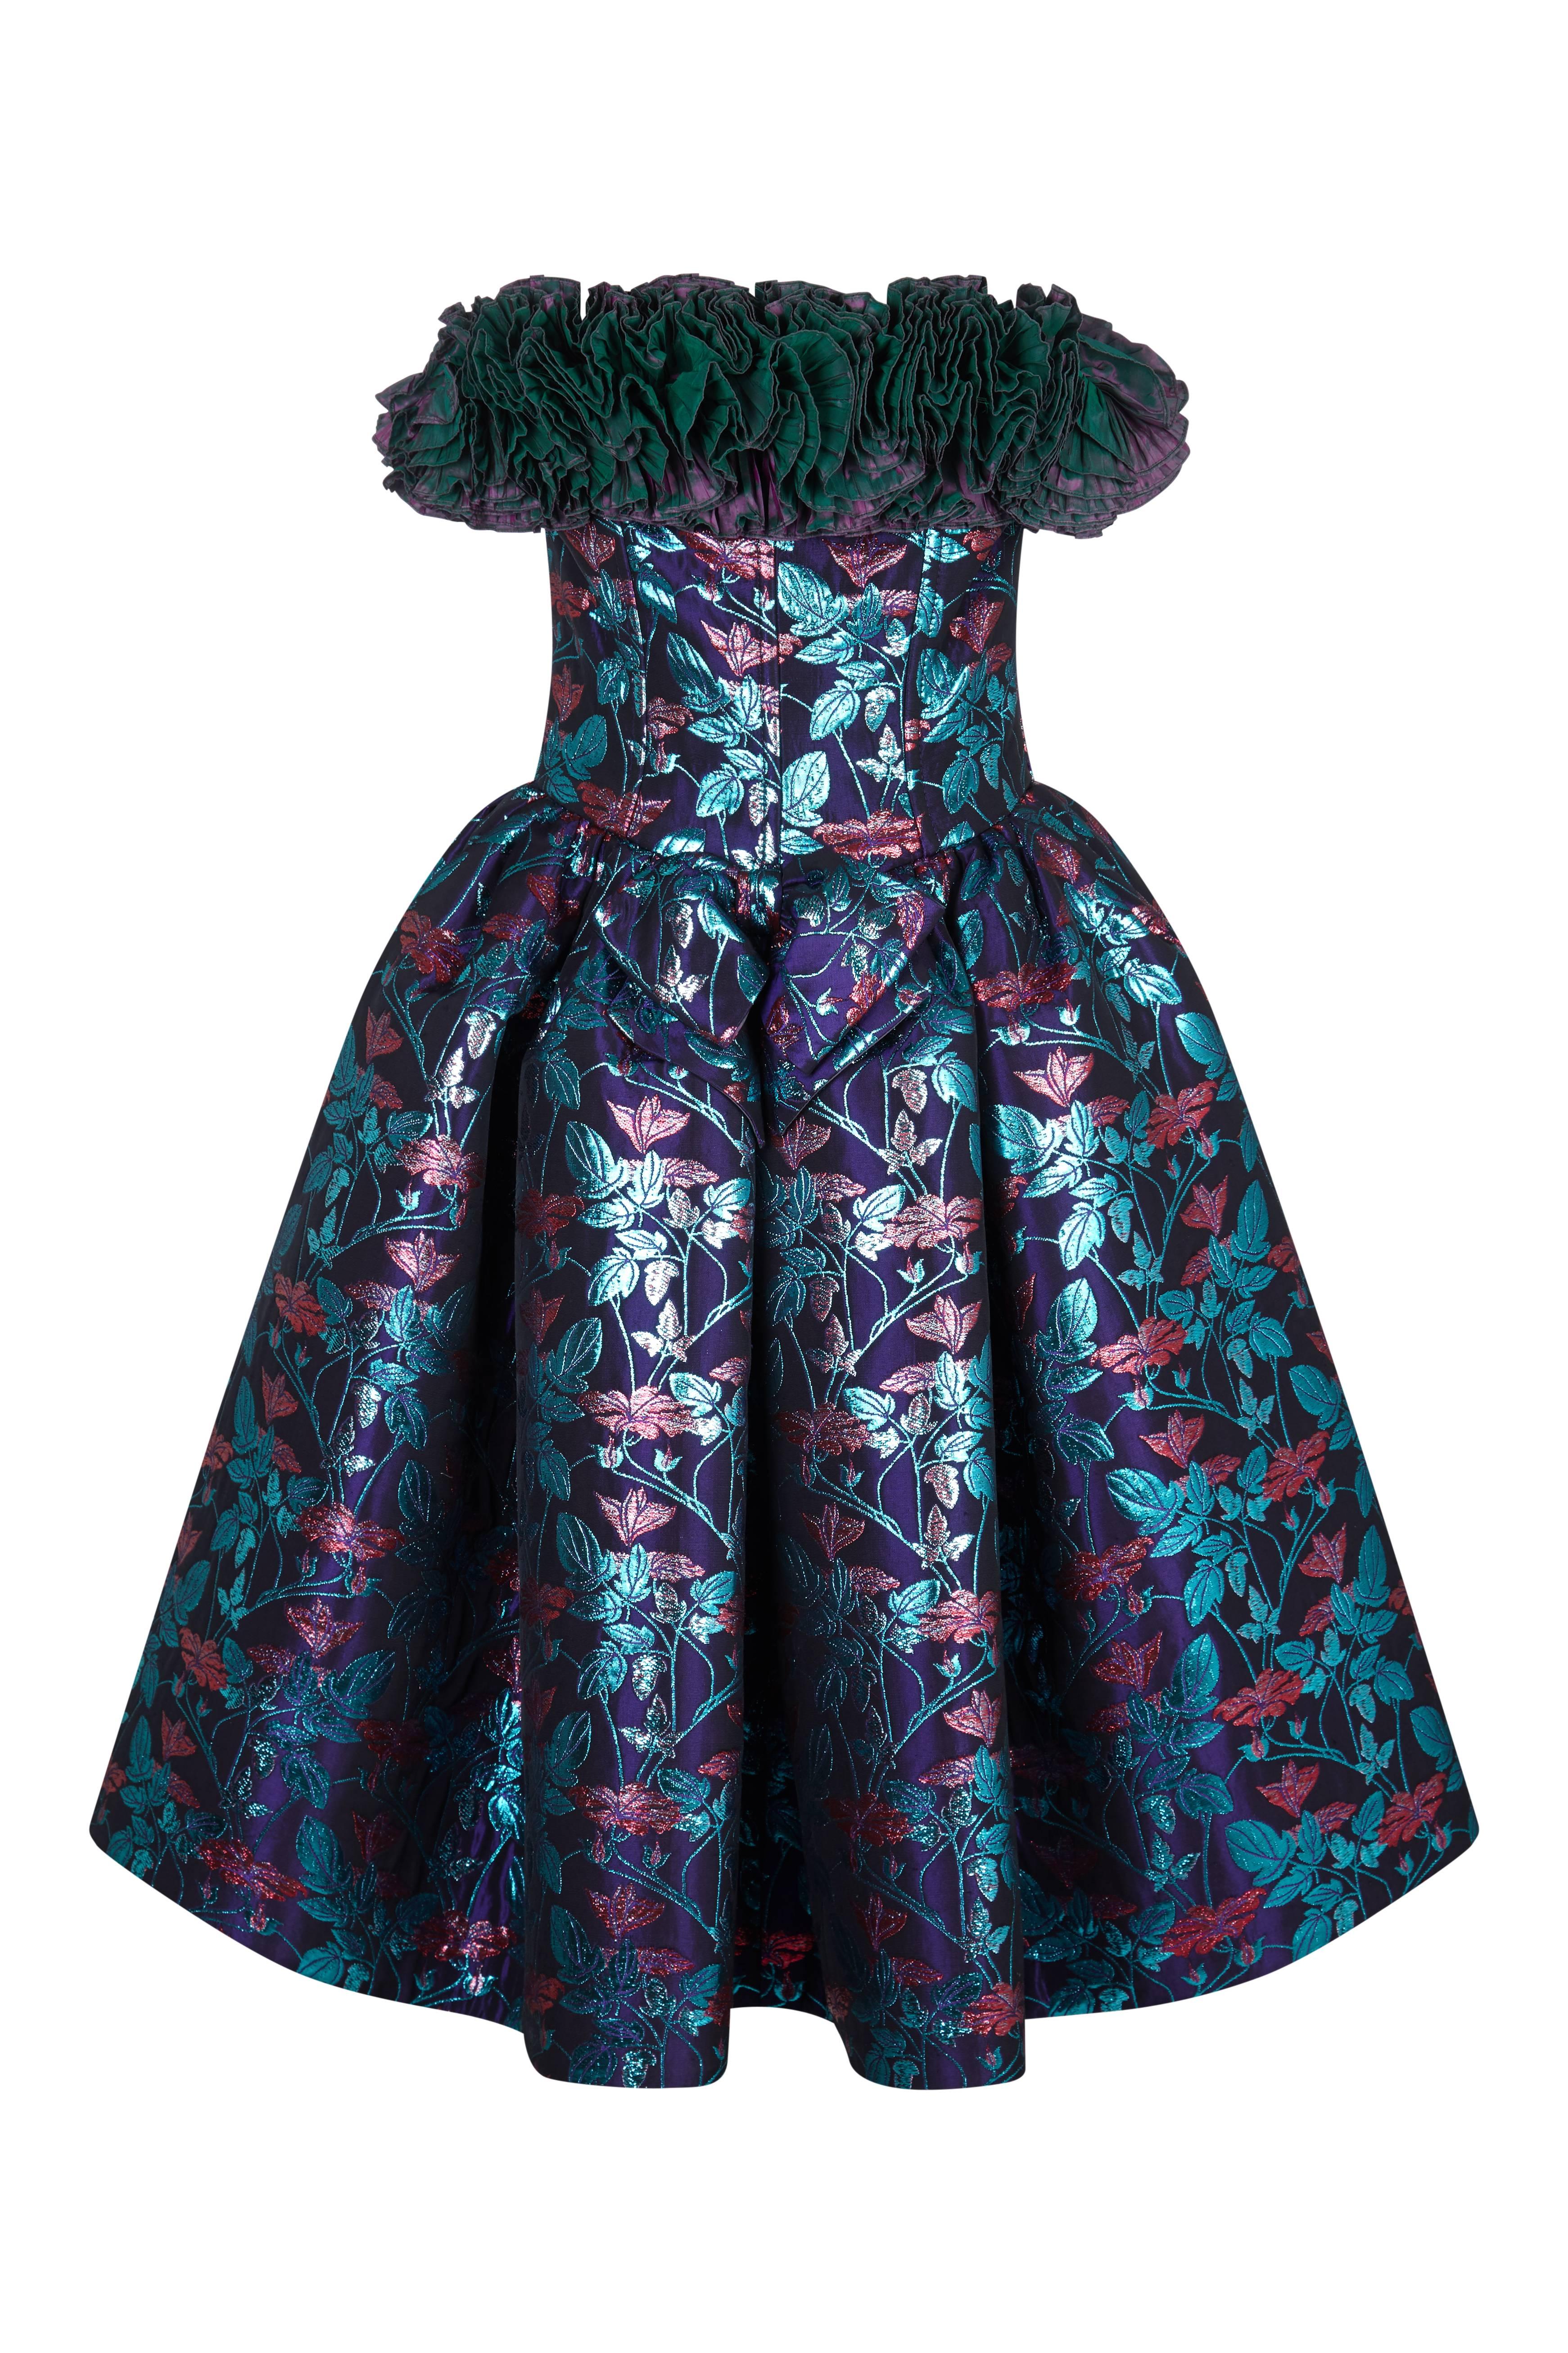 Dieses unglaubliche Haute-Couture-Partykleid von Nina Ricci aus den 1990er Jahren ist ein garantierter Blickfang und besticht durch eine Reihe von Designmerkmalen, die für den kompromisslosen femininen Glamour des berühmten Labels stehen. Der